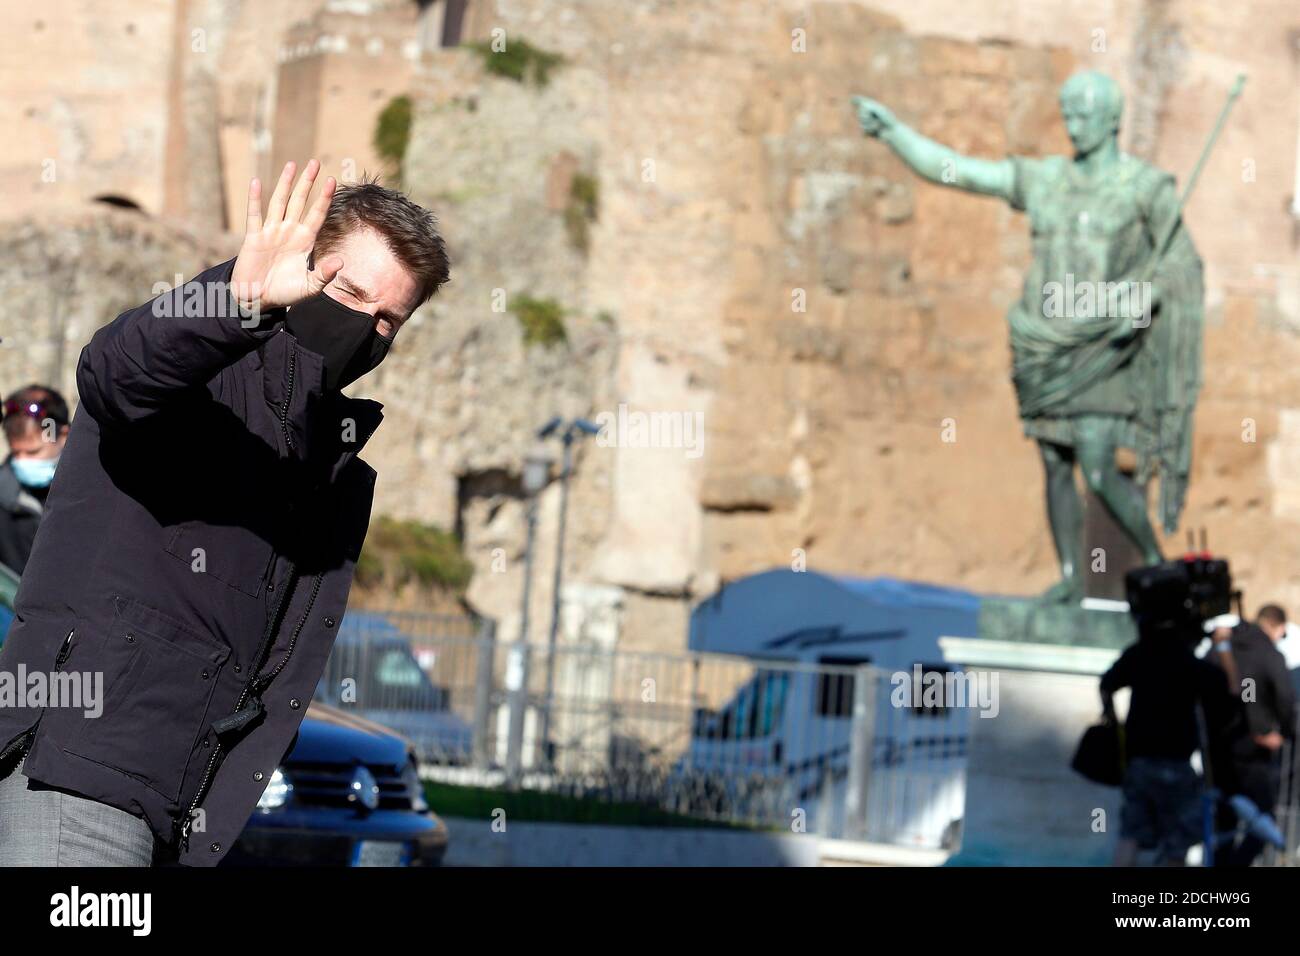 Roma, Italia. 21 Nov 2020. L'attore Tom Cruise saluta i suoi fan e fa selfie con loro sul set del film Missione Impossible 7 a Imperial Fora a Roma. Roma (Italia), 21 novembre 2020 Photo Samantha Zucchi Insifefoto Credit: Insifefoto srl/Alamy Live News Foto Stock